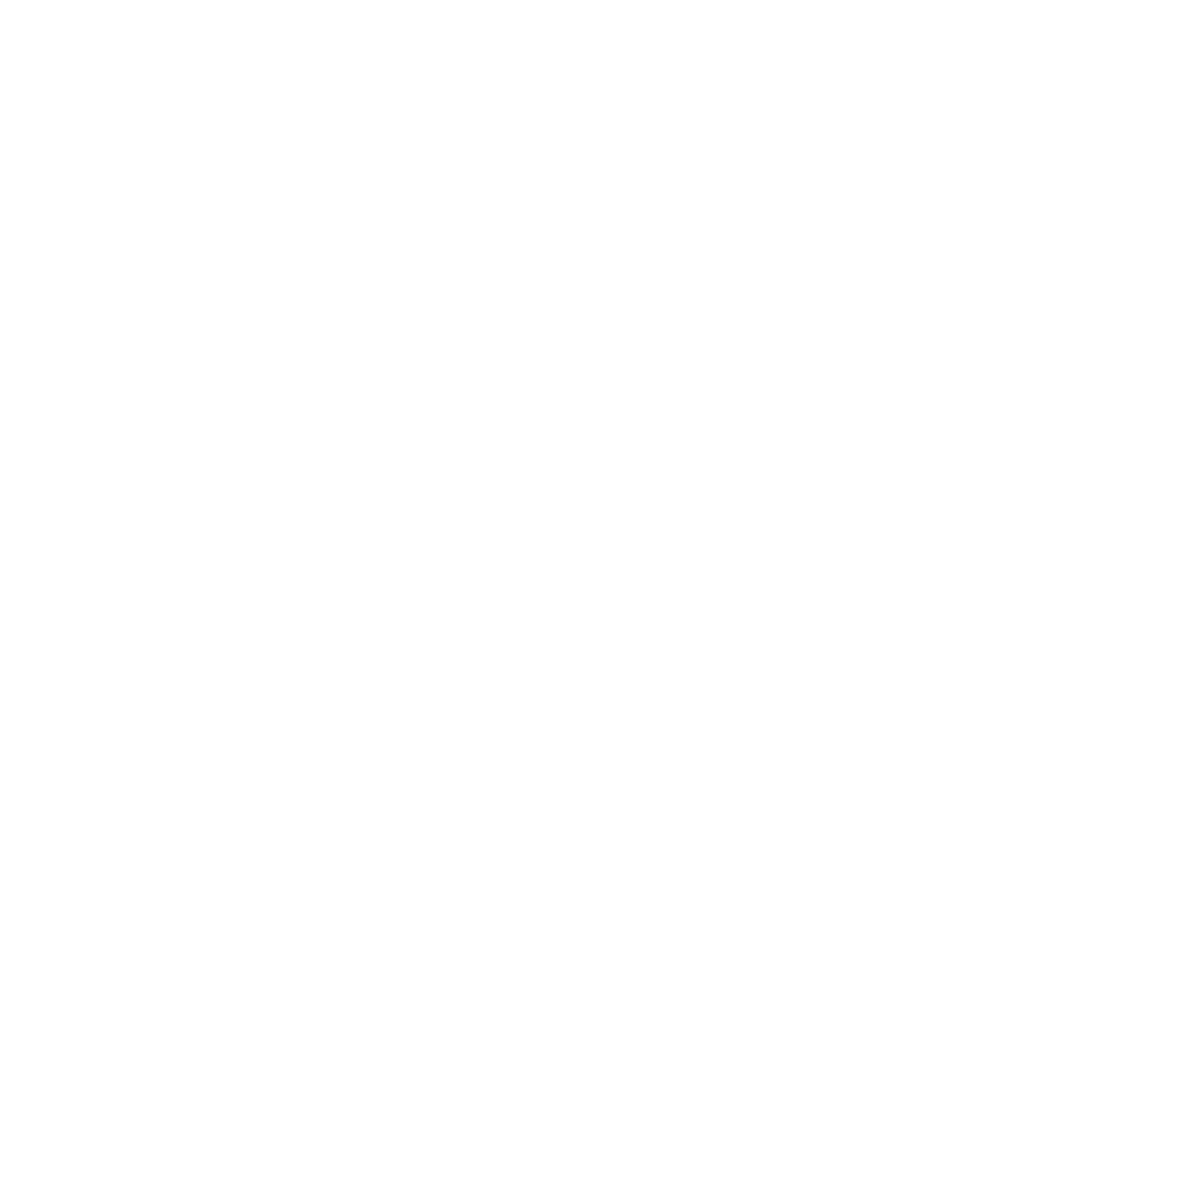 soulgrown